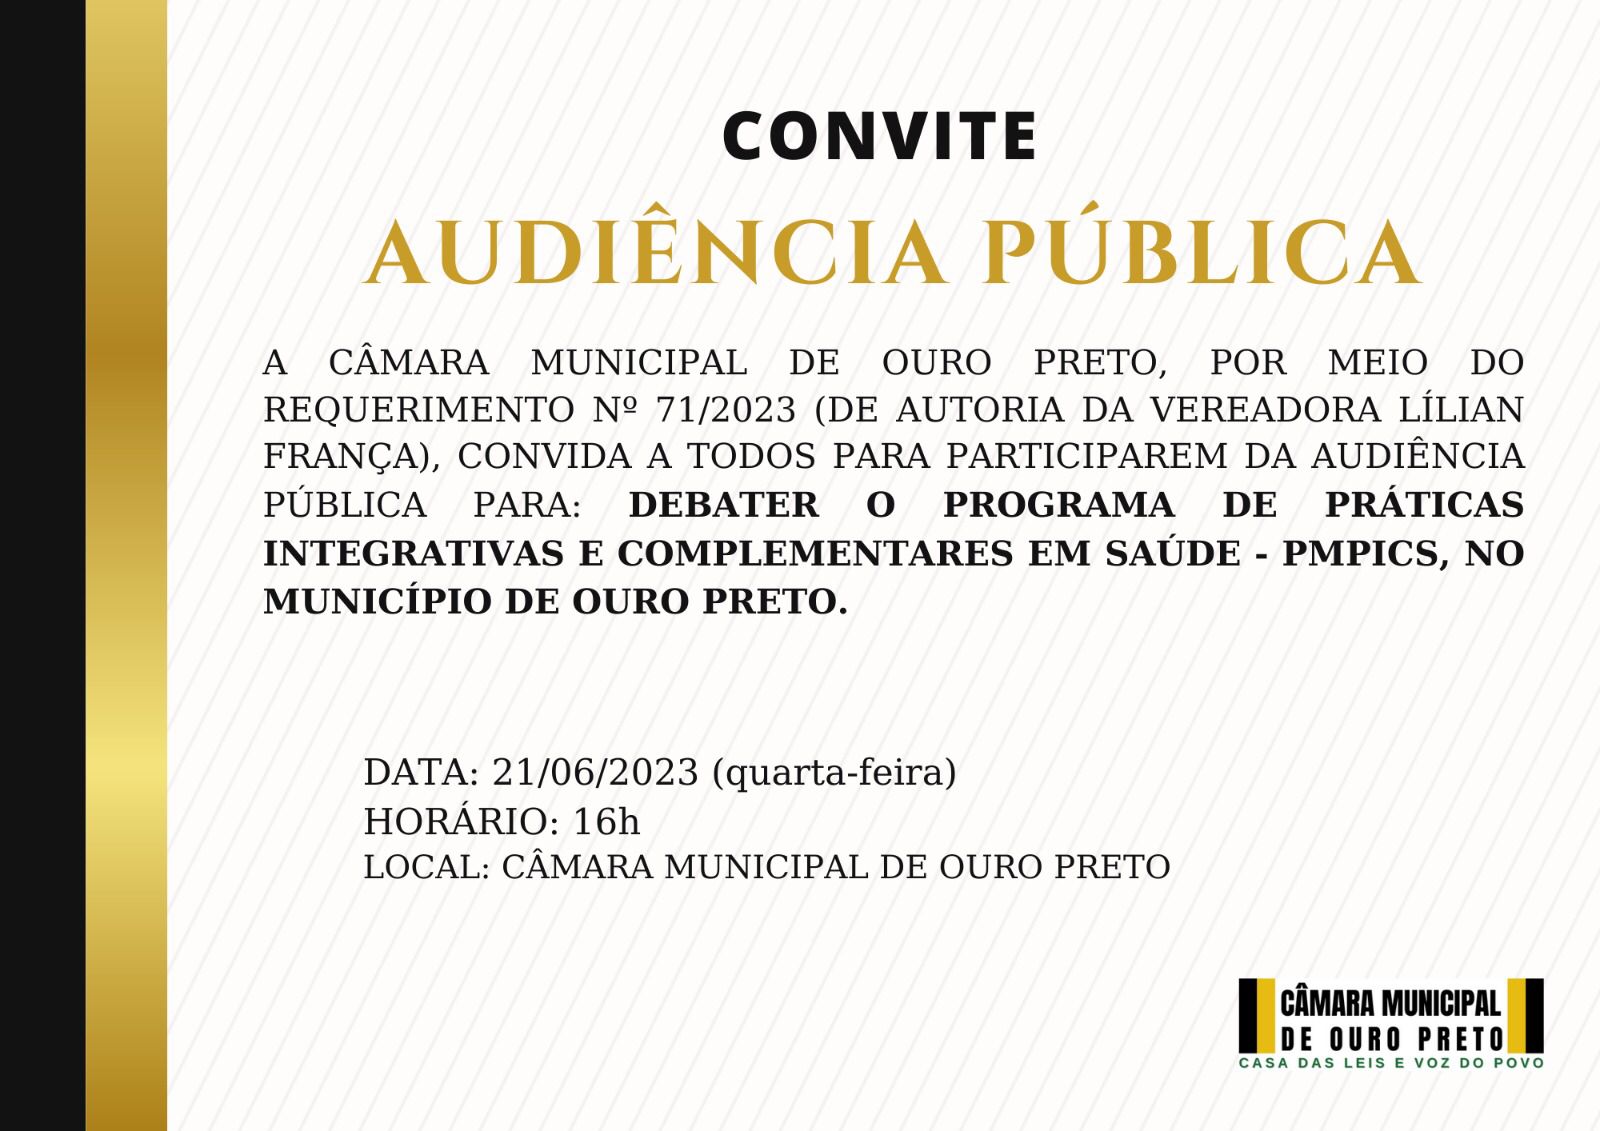 Câmara Municipal de Ouro Preto - Audiência Pública: debater o Programa de Práticas Integrativas e Complementares em Saúde, no município de Ouro Preto